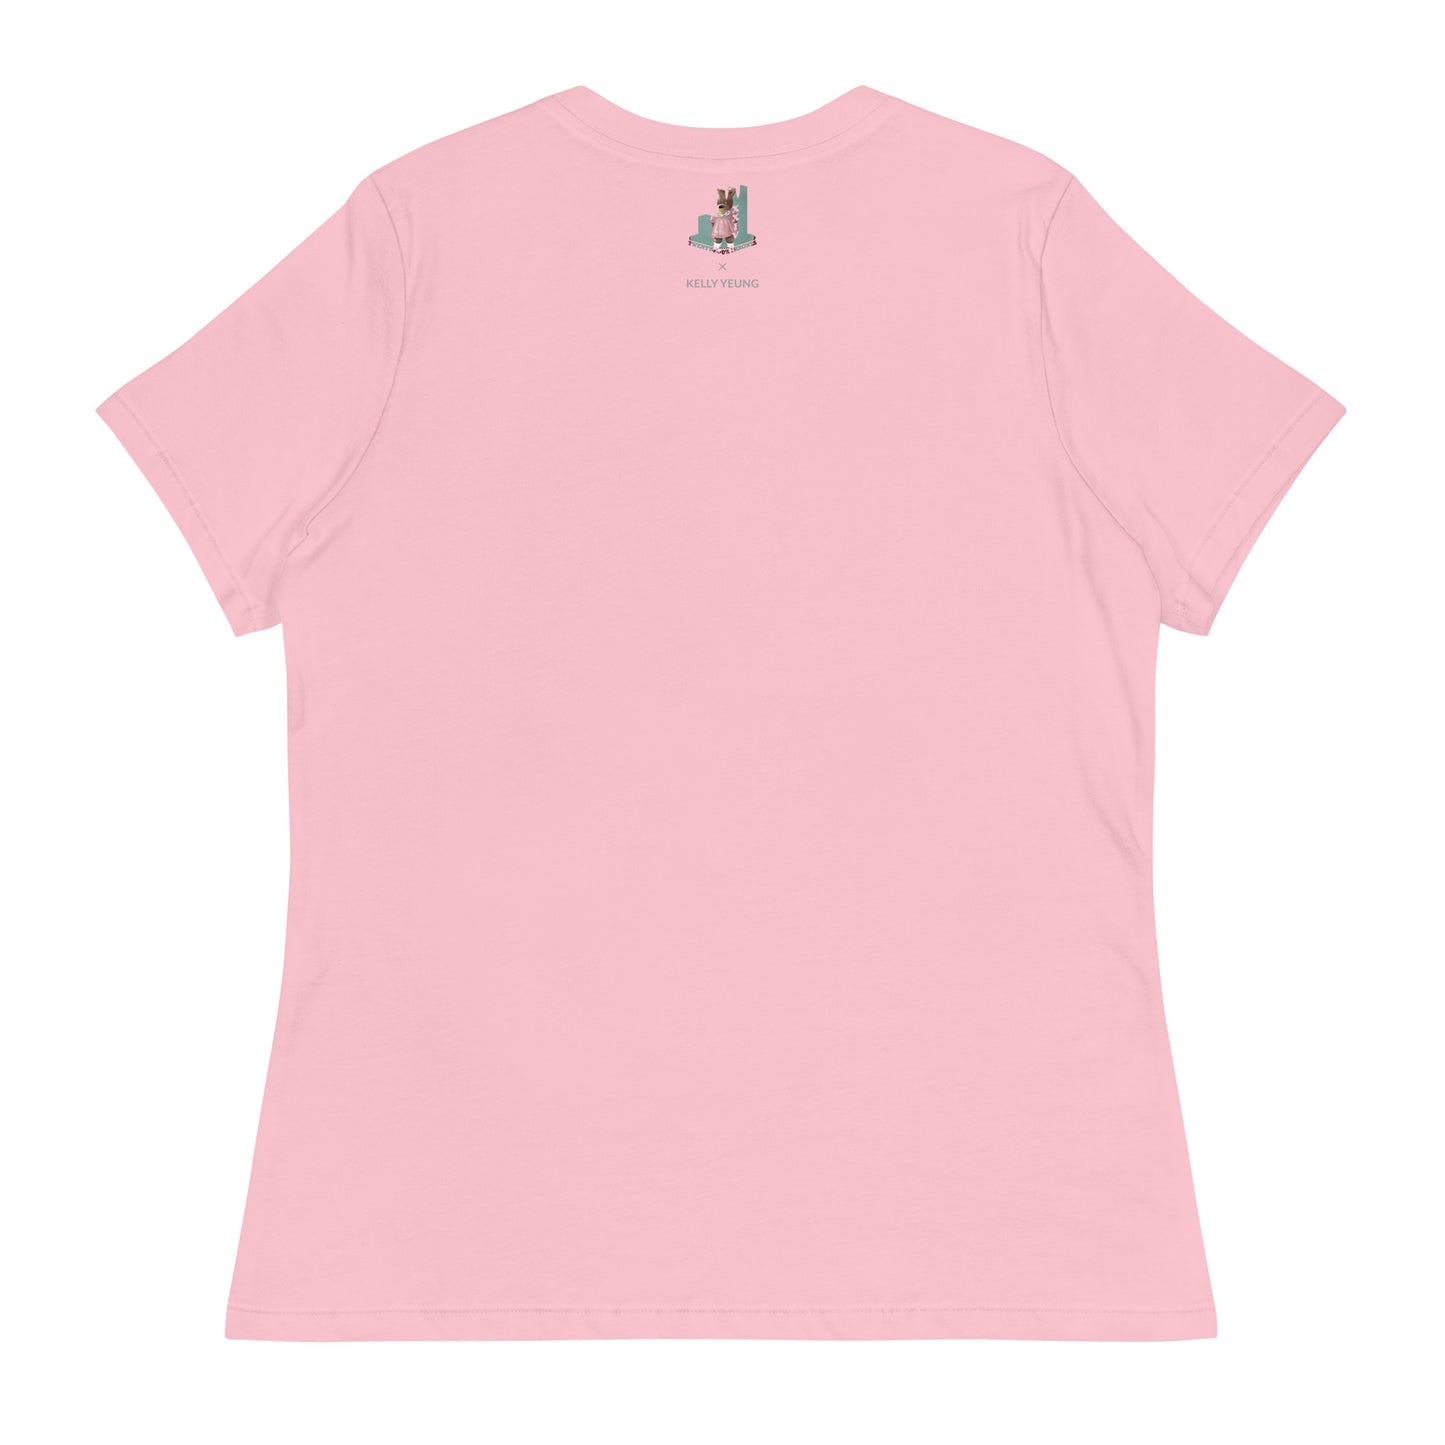 Bear Girl Women's T-Shirt